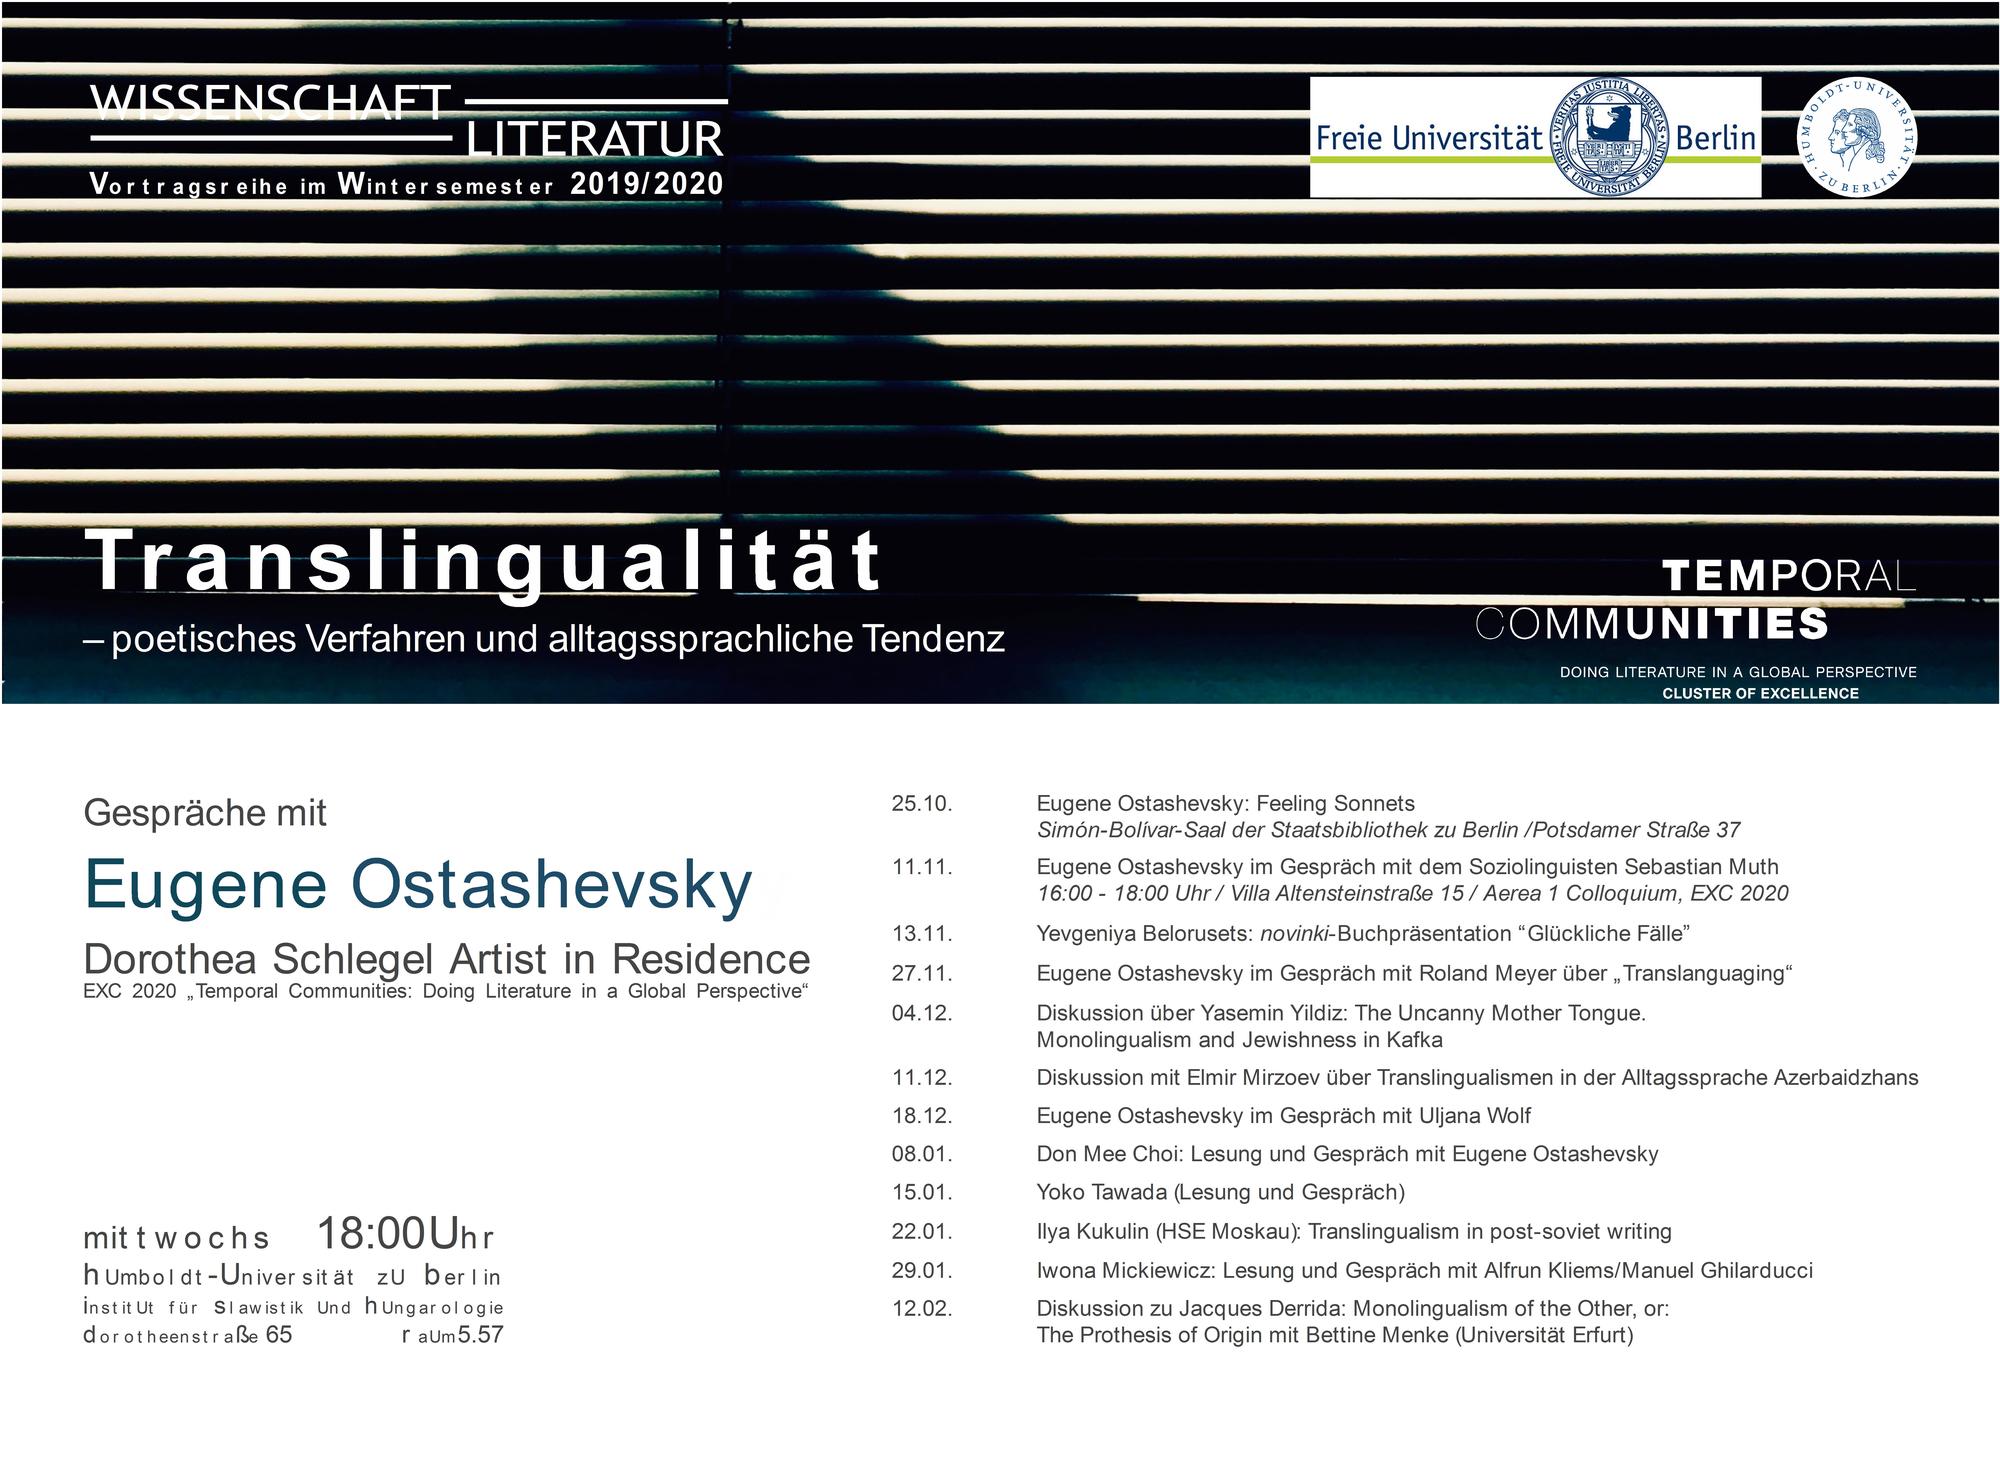 Don Mee Choi & Eugene Ostashevsky at "Translingualität - poetisches Verfahren und alltagssprachliche Tendenz"